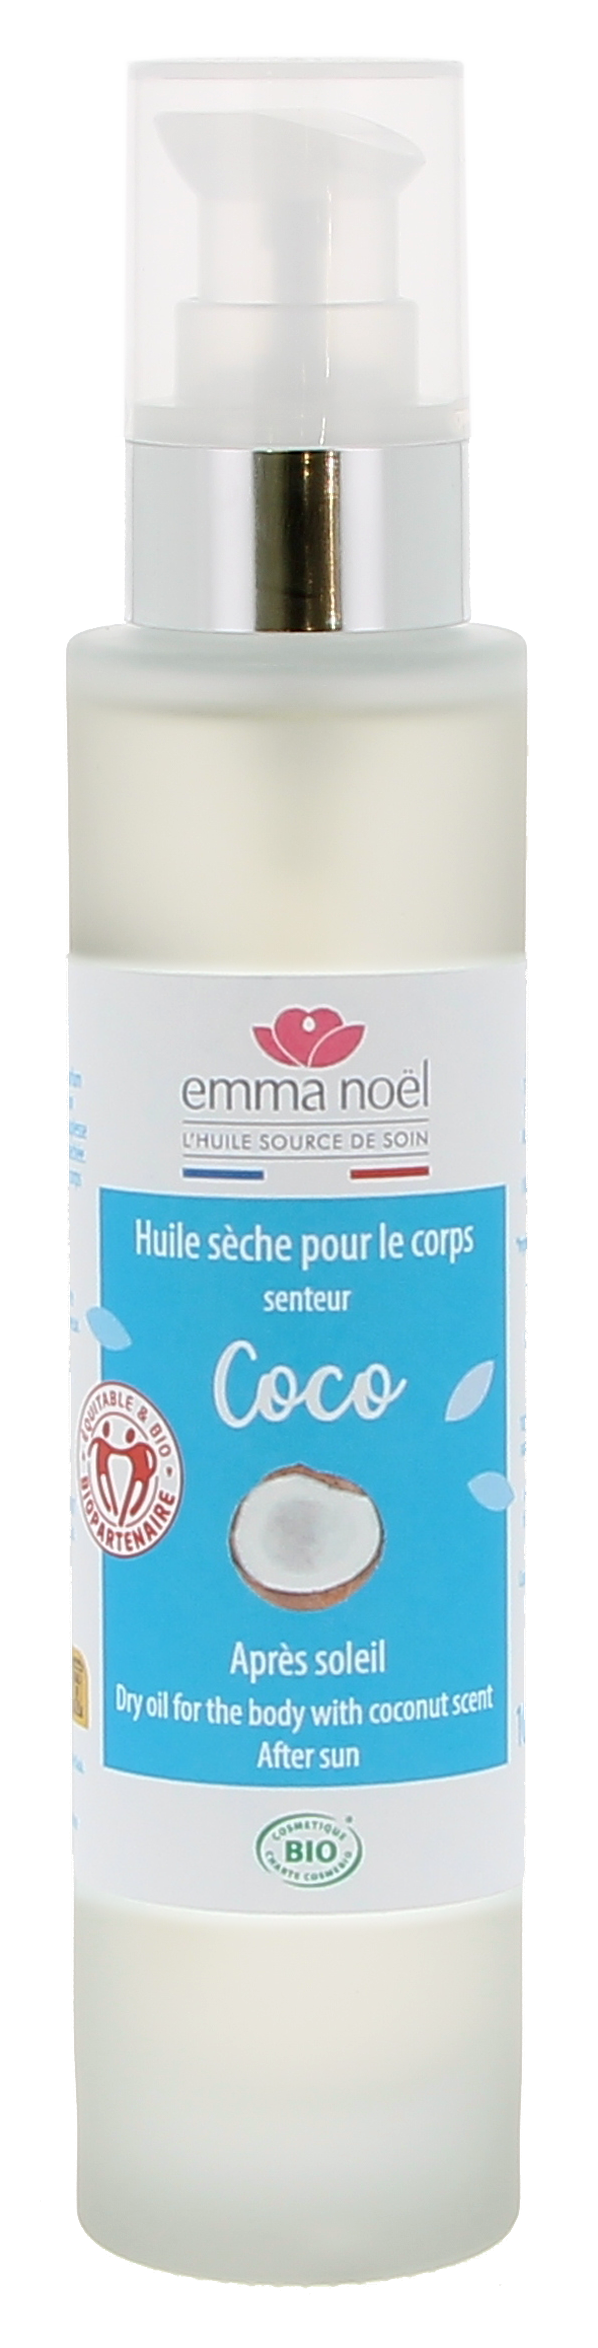 Emma Noël -- Huile sèche pour le corps senteur coco bio - 100 mL